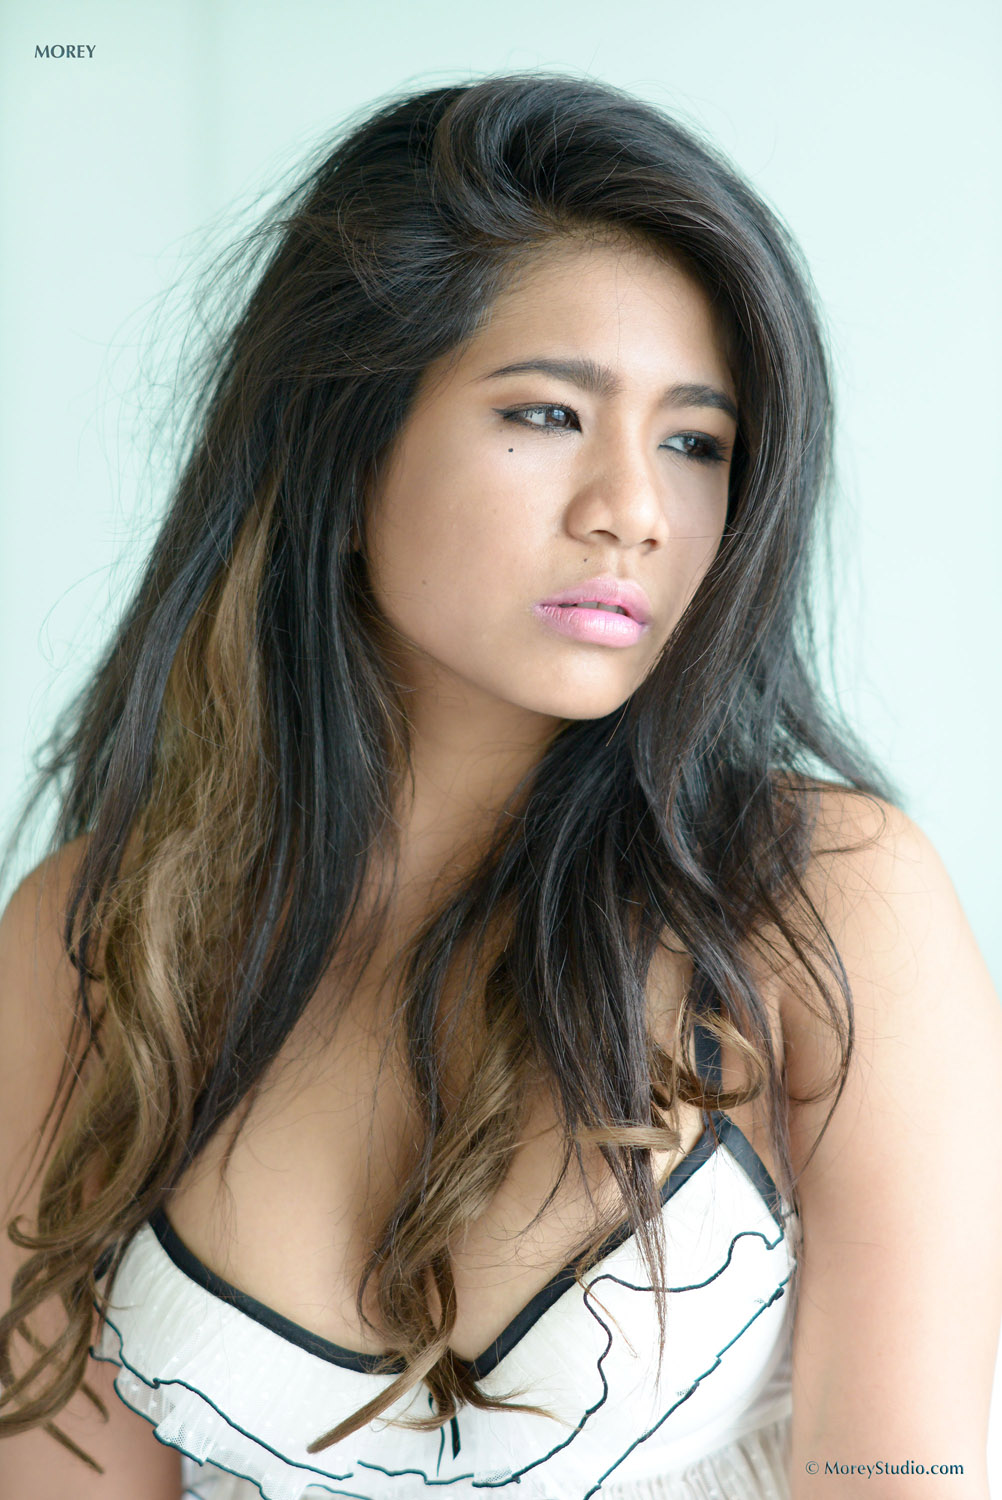 Rita Cute Thick Asian Model for Morey Studios